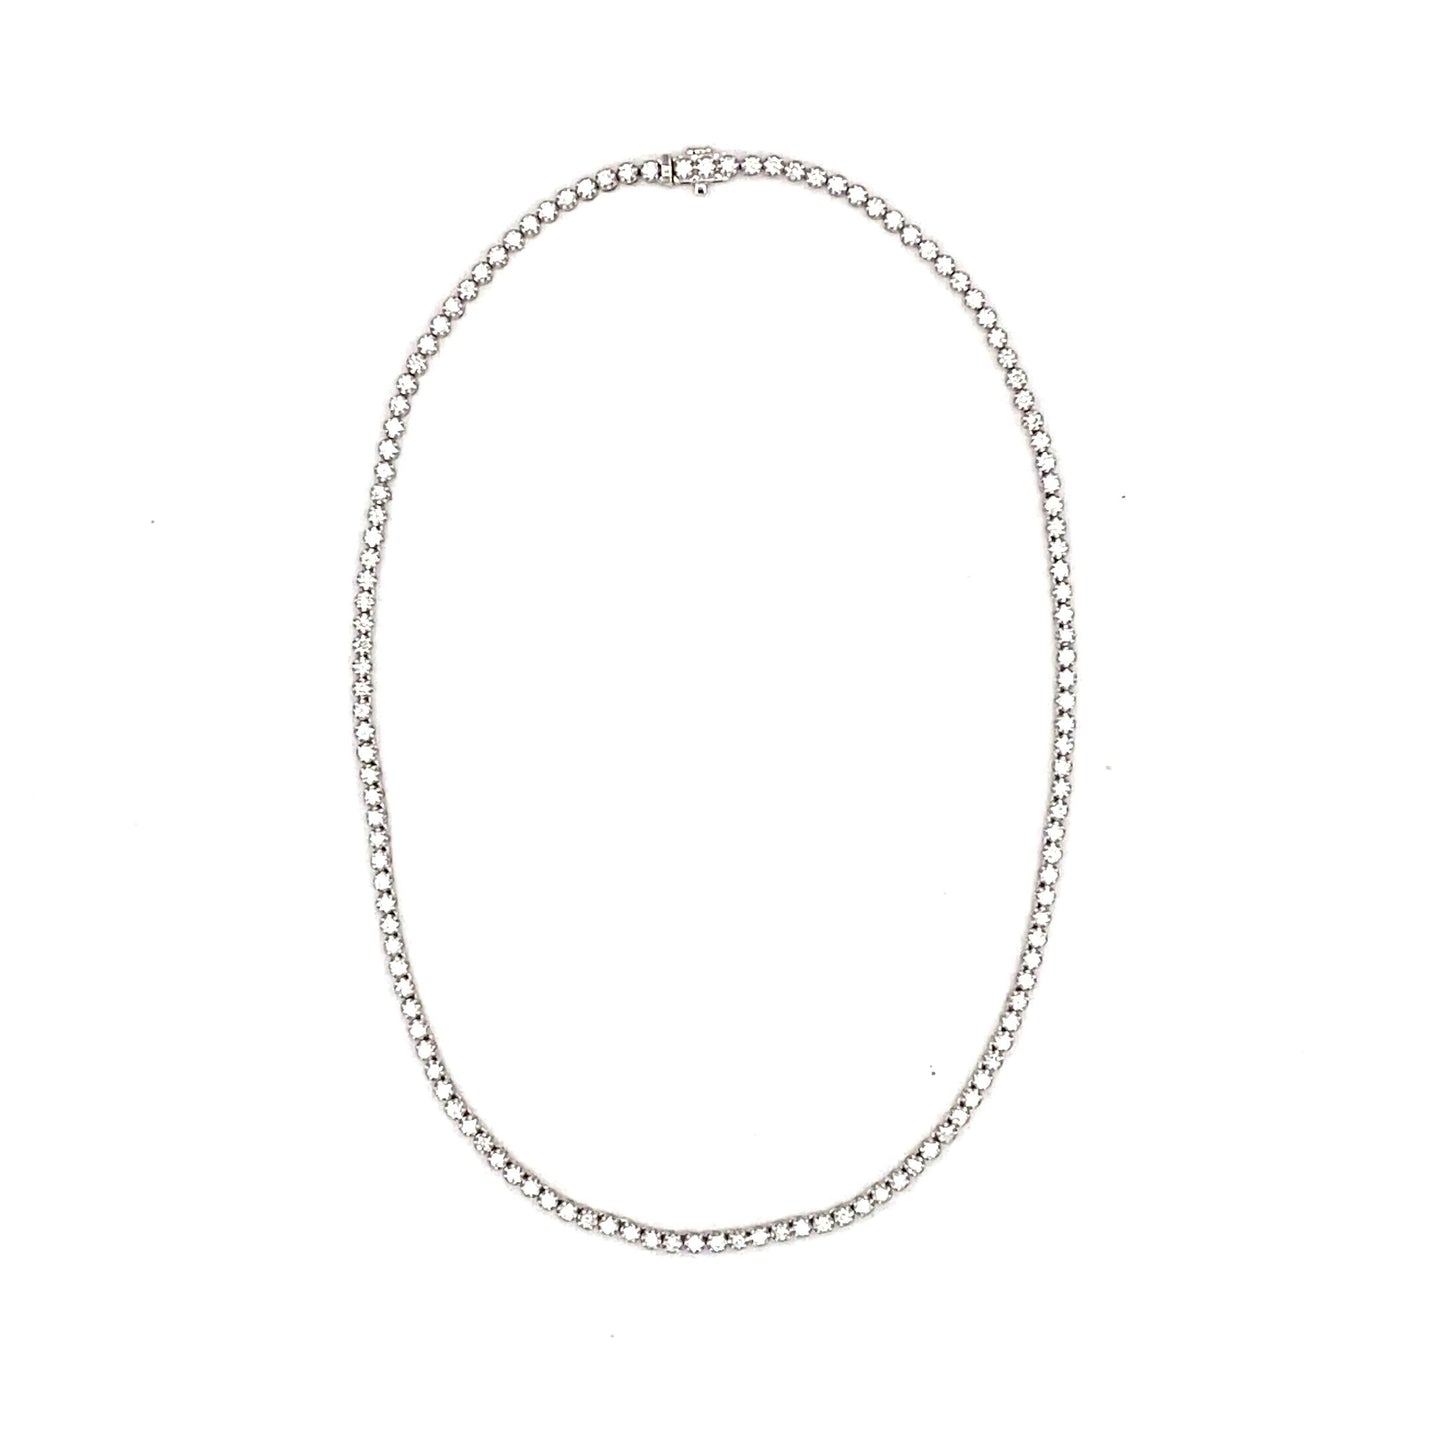 Stern International | 14K White Gold Tennis Necklace - 6.55ct